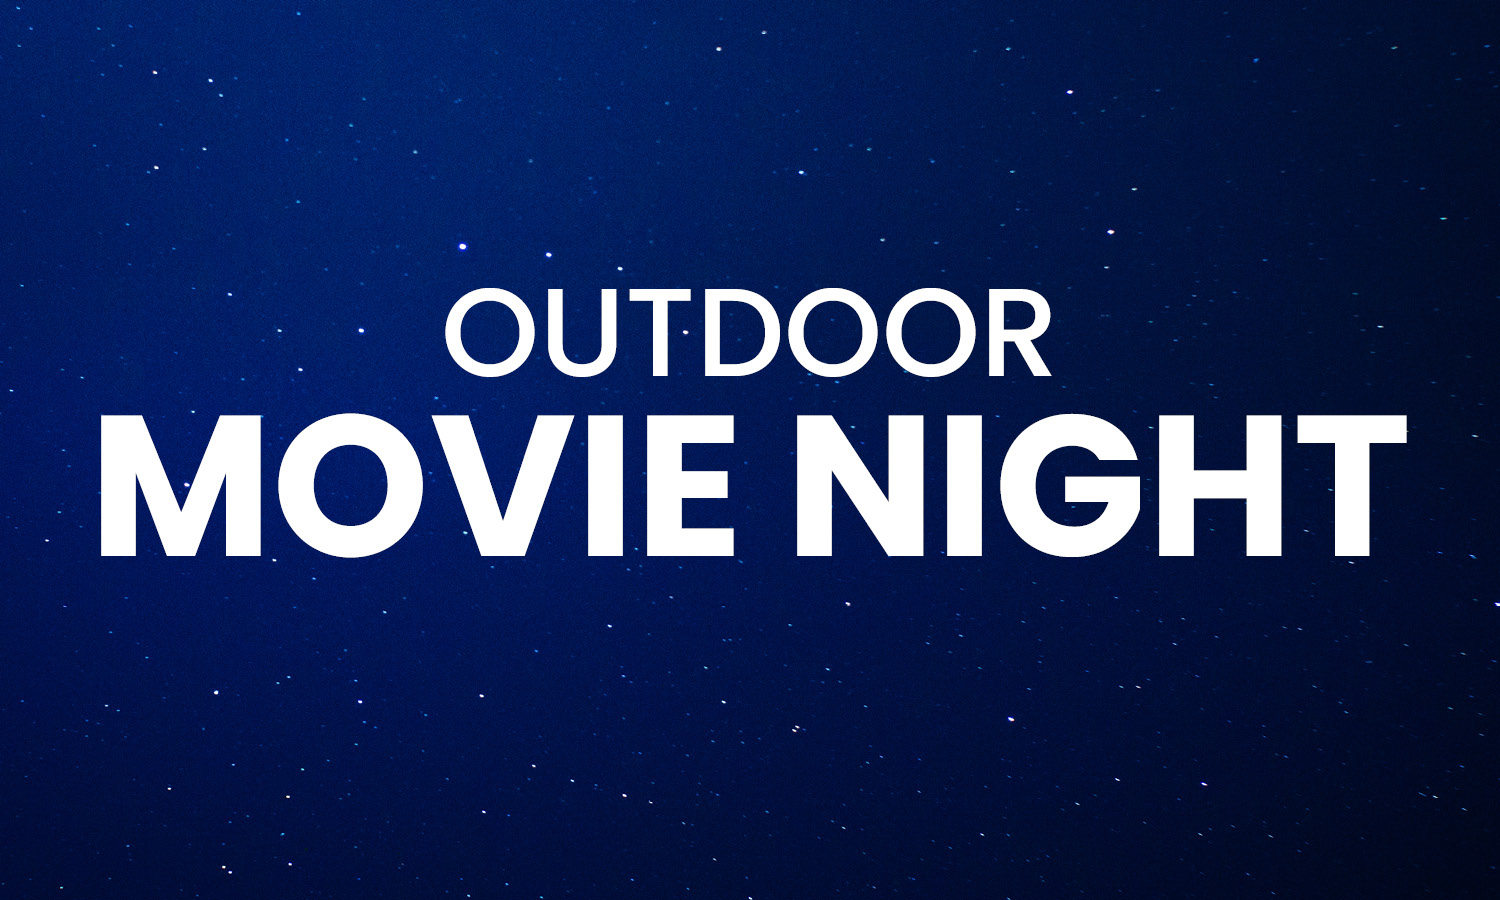 Illustration of stars in dark blue night sky. Text: Outdoor Movie Night